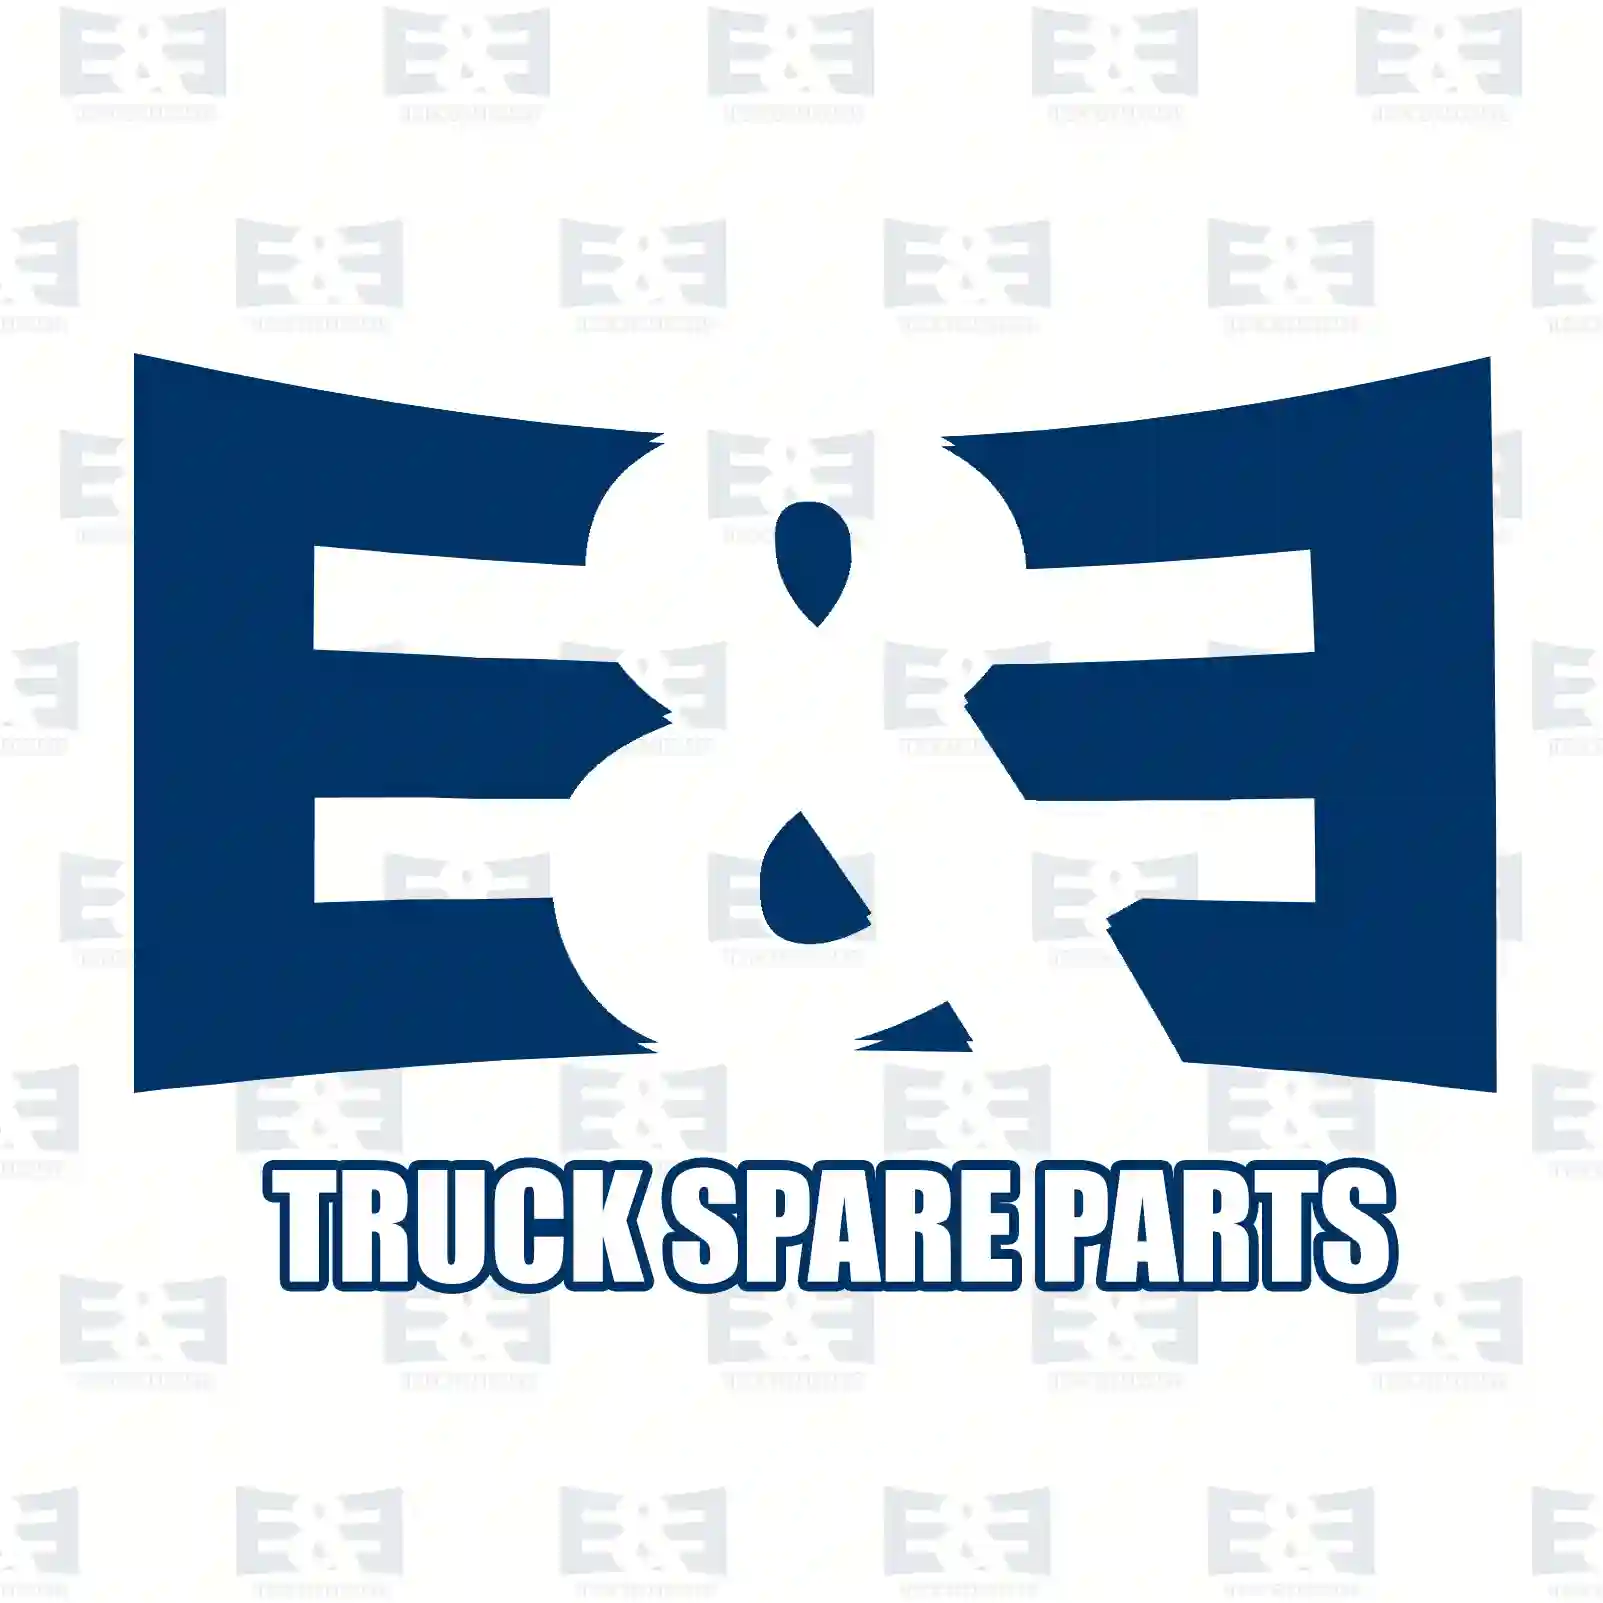 General overhaul kit, 2E2206854, 85103633S2 ||  2E2206854 E&E Truck Spare Parts | Truck Spare Parts, Auotomotive Spare Parts General overhaul kit, 2E2206854, 85103633S2 ||  2E2206854 E&E Truck Spare Parts | Truck Spare Parts, Auotomotive Spare Parts